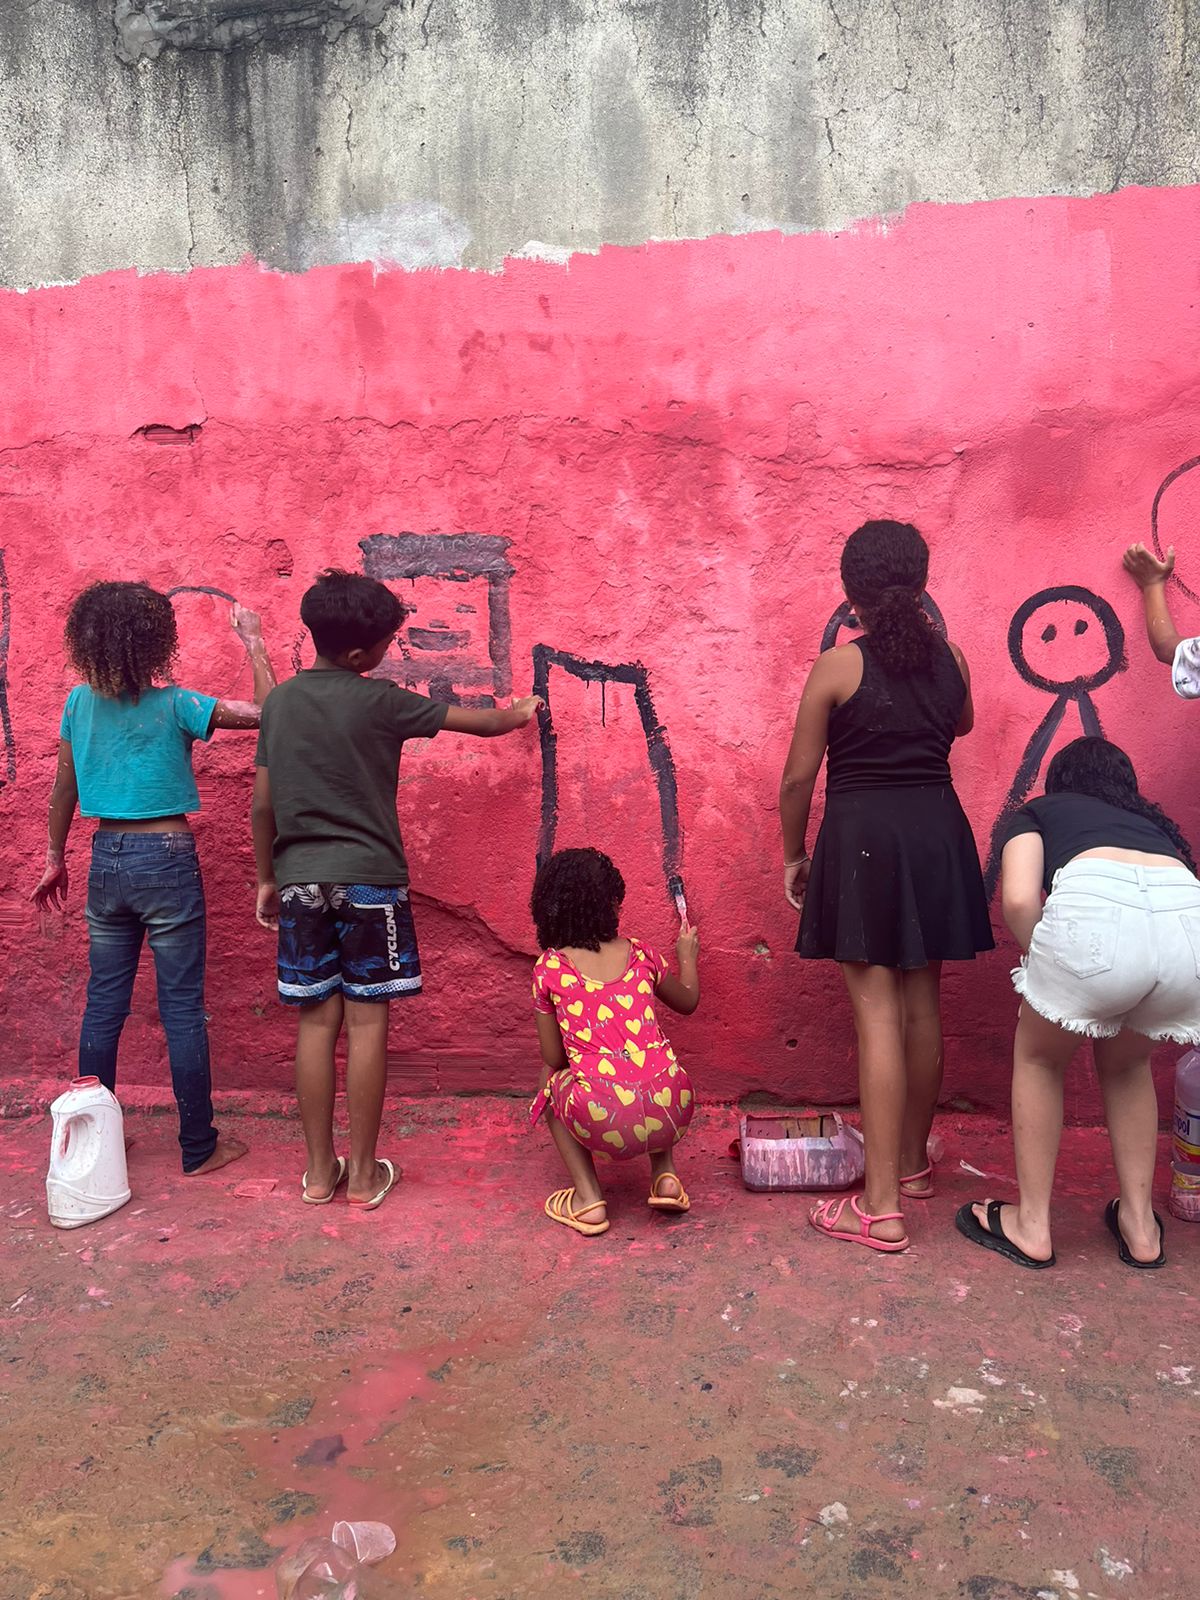 A imagem mostra várias crianças desenhando em uma parede externa. A parede é texturizada e pintada de rosa, com partes desgastadas mostrando a cor cinza do concreto por baixo. As crianças estão focadas em seus desenhos, que incluem formas geométricas e um boneco de palito. É uma cena colorida e animada, com as crianças expressando sua criatividade e se divertindo ao ar livre. A textura da parede e as poças d’água no chão sugerem choveu pouco antes.